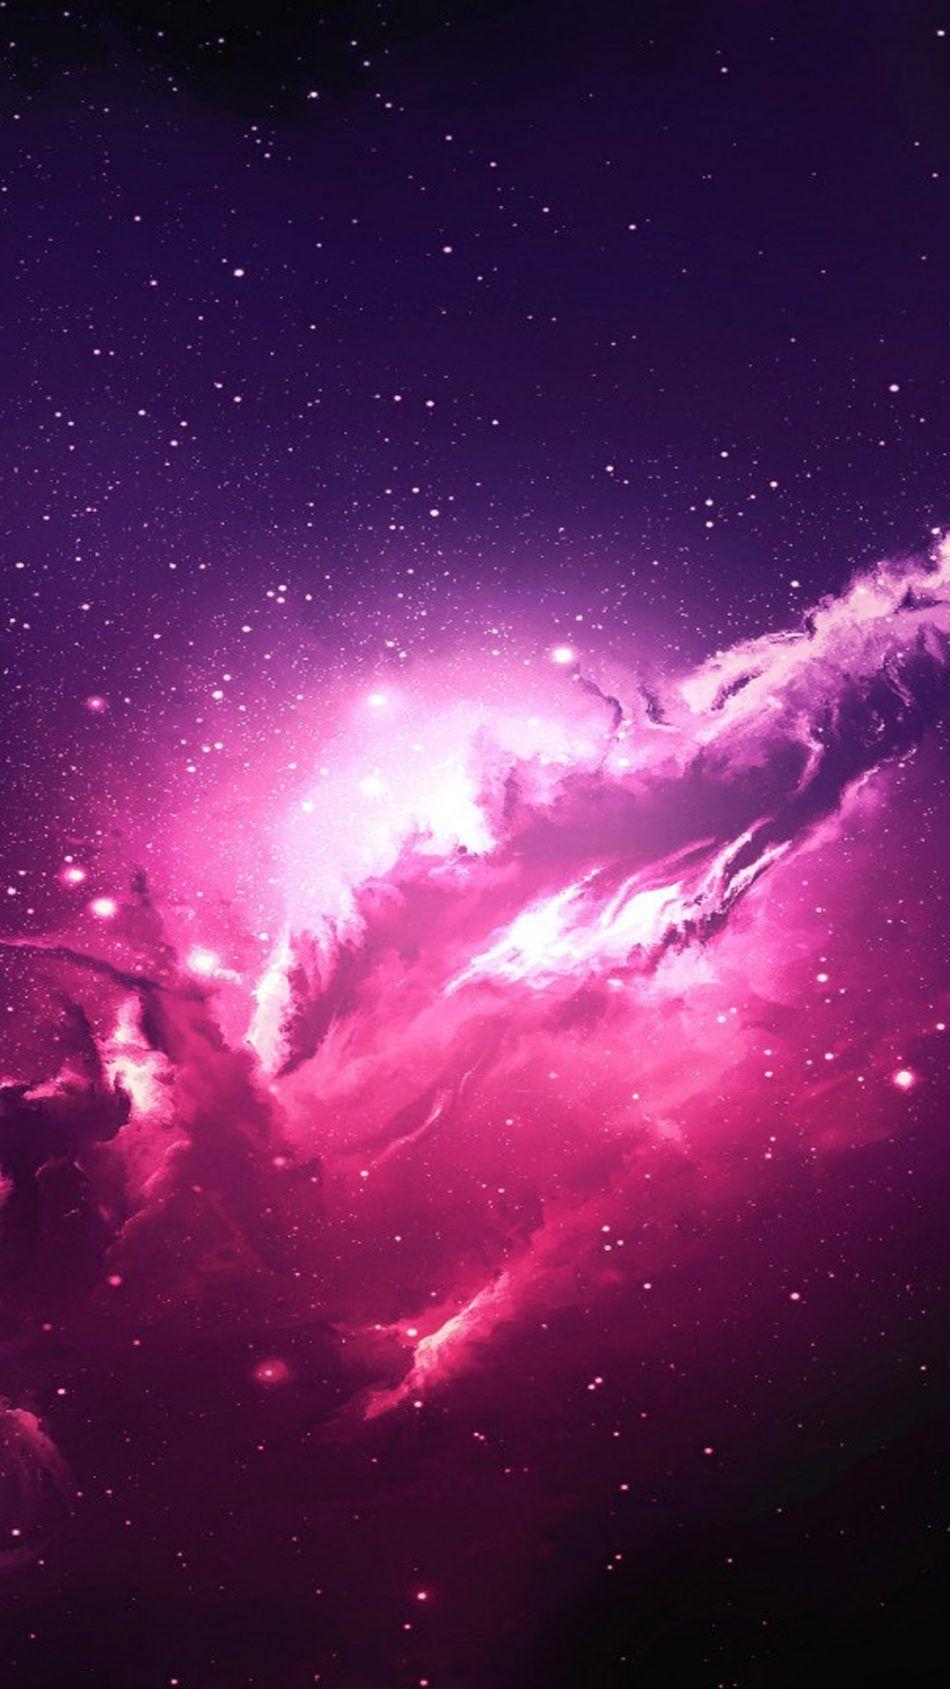 Hình nền Galaxy Pink cho iPhone mang tới cảm giác huyền ảo khi nhìn vào chiếc điện thoại của bạn. Với hiệu ứng sao chổi và màu sắc hồng lấp lánh, đây là lựa chọn hoàn hảo cho những ai yêu thích vẻ đẹp của vũ trụ.